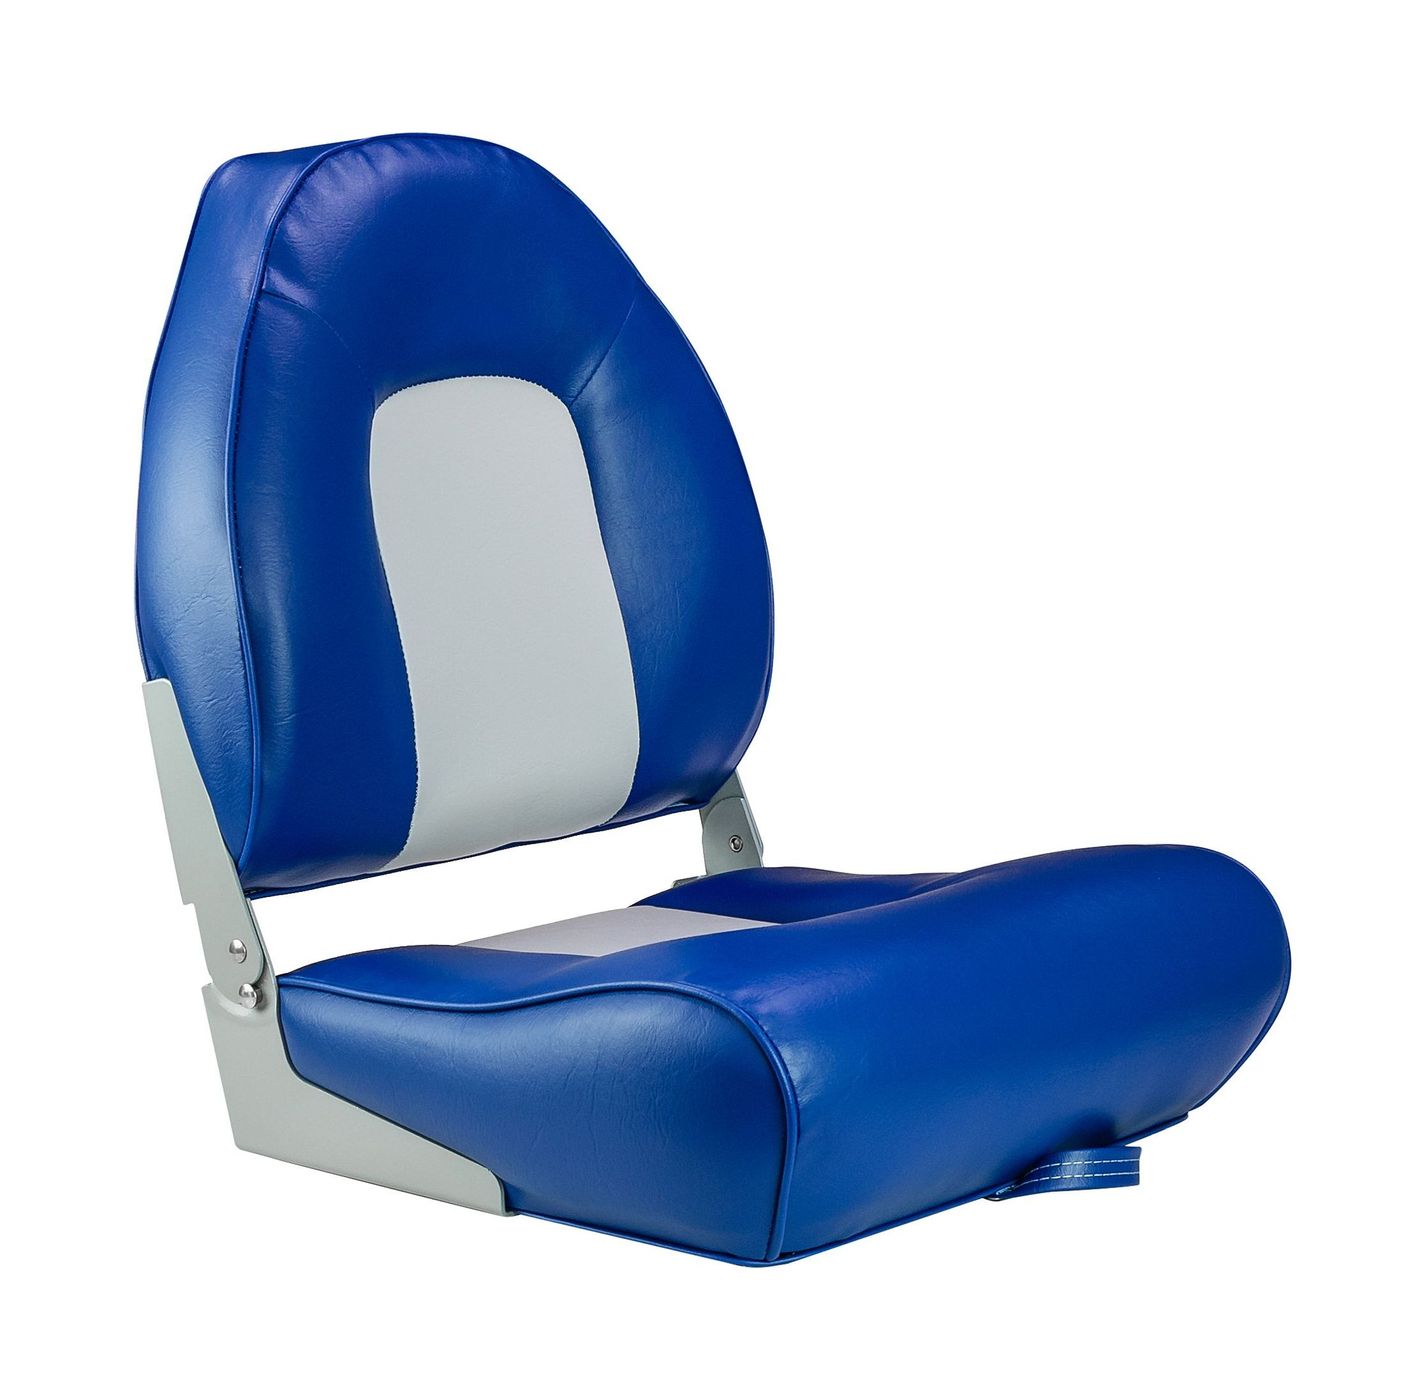 Кресло мягкое складное, обивка винил, цвет синий/серый, Marine Rocket 75116GB-MR кресло мягкое складное deluxe обивка винил белый синий marine rocket 75137wb mr